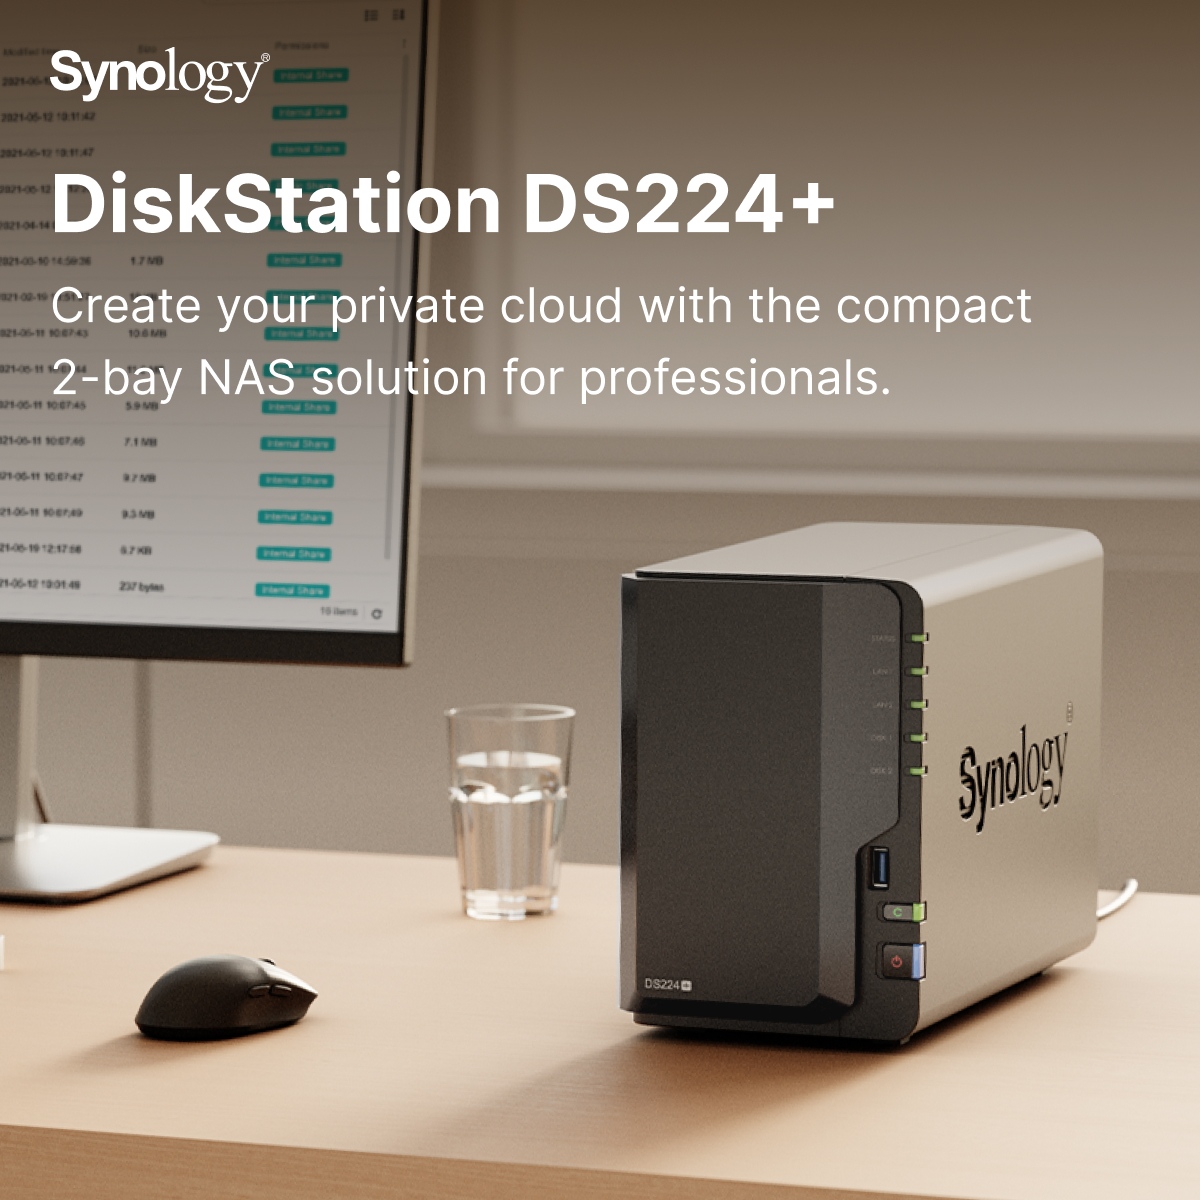 Tổng quan về thiết bị lưu trữ NAS synology DS224+